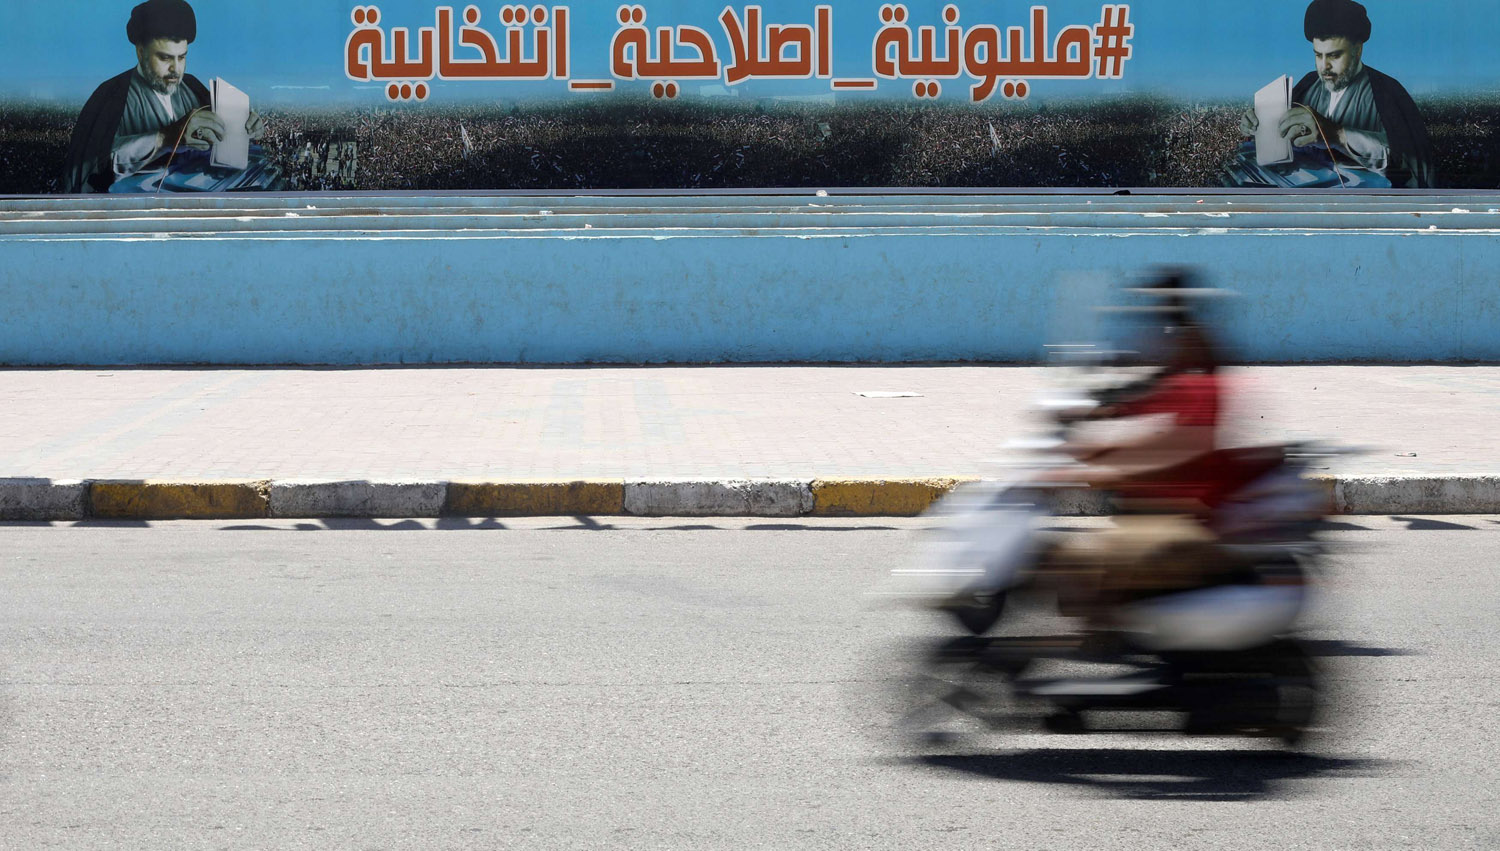 عراقي على دراجة يمر بجانب ملصق انتخابي لكتلة الصدر